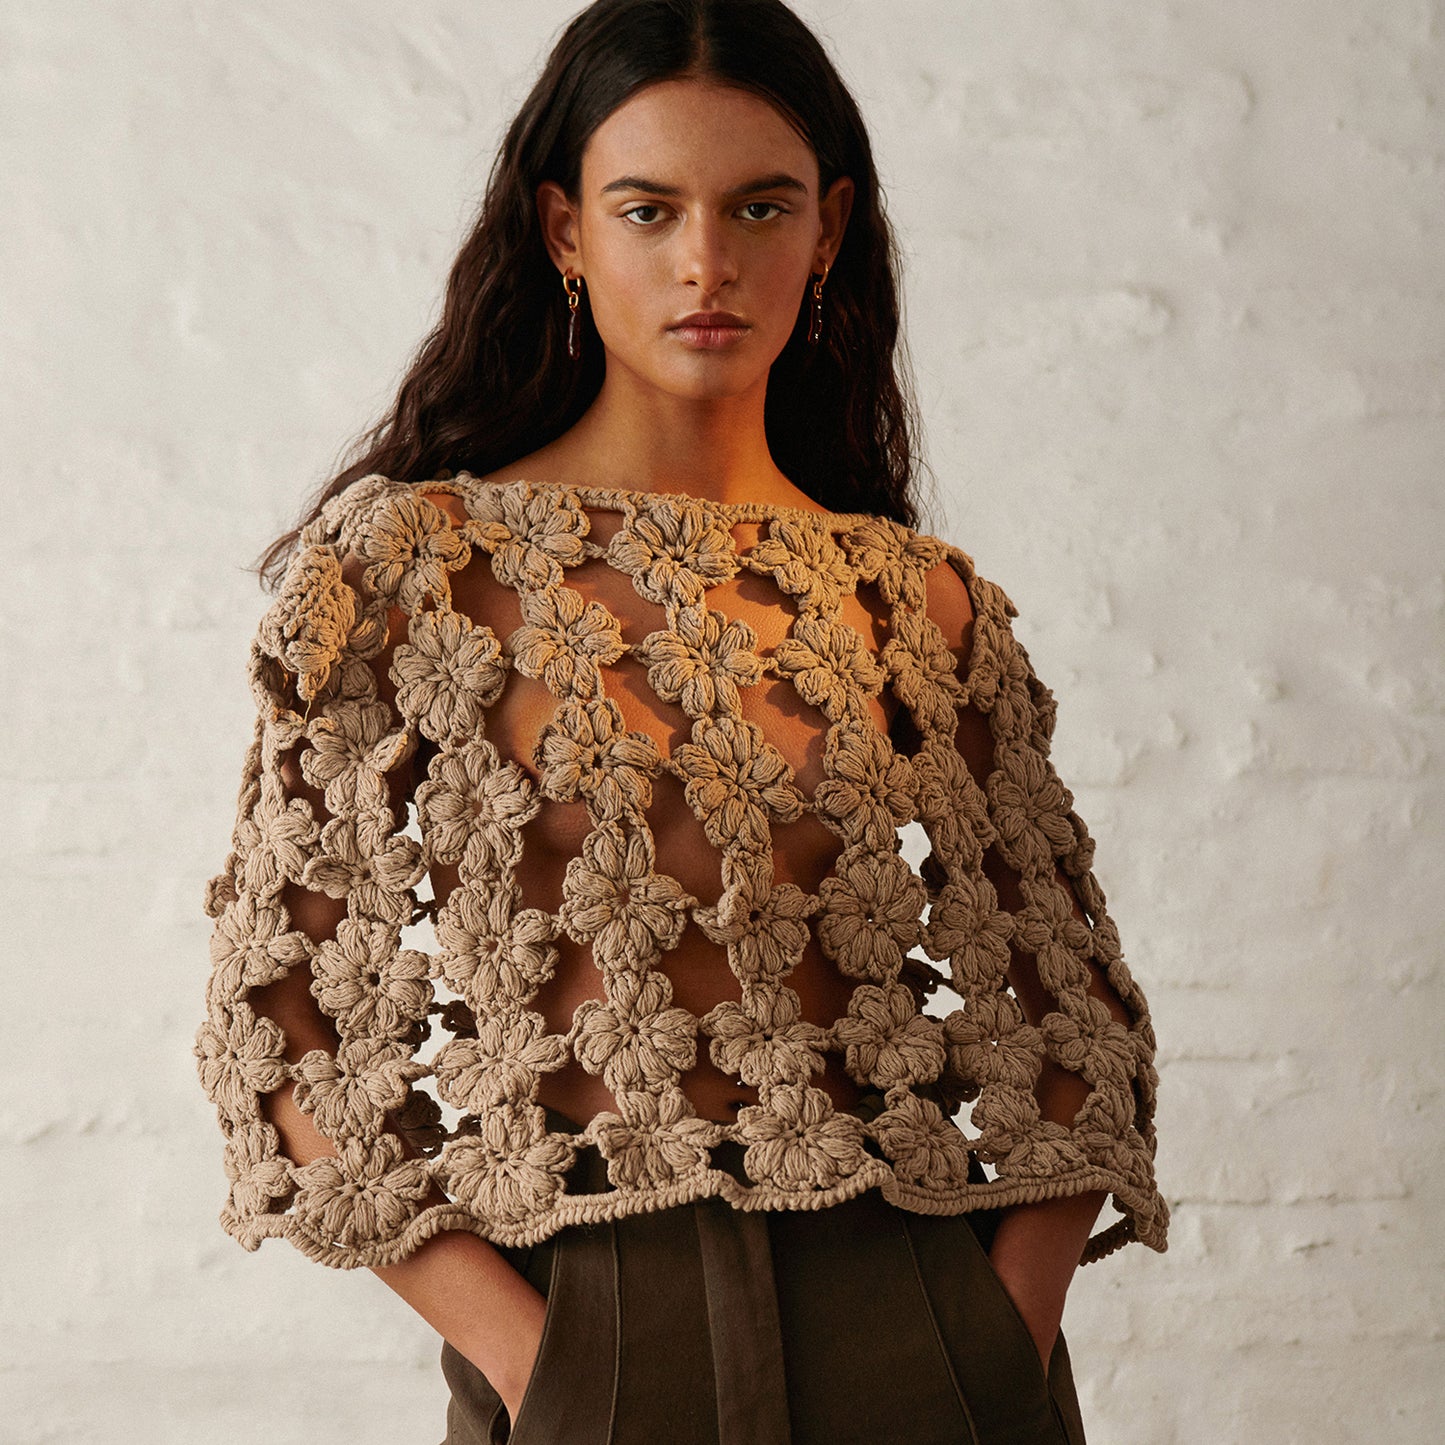 Argentina, Maydi / Maria Abdala Zolezzi, Knitwear & Weaving